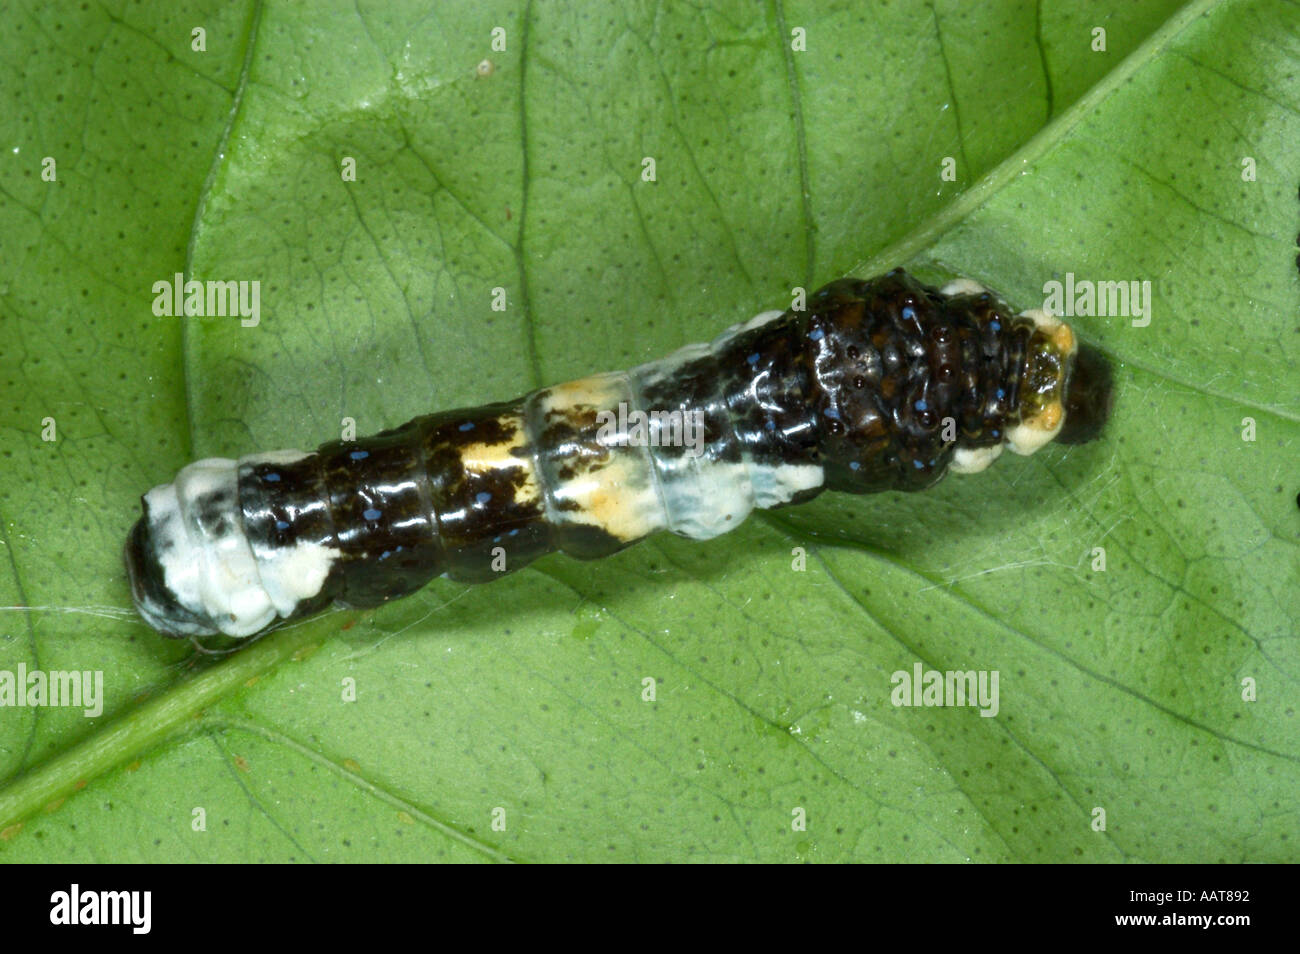 Grand porte-queue Papilio cresphontes caterpillar appelé chien orange ou orange chiot peut être un ravageur dans les vergers d'agrumes Banque D'Images